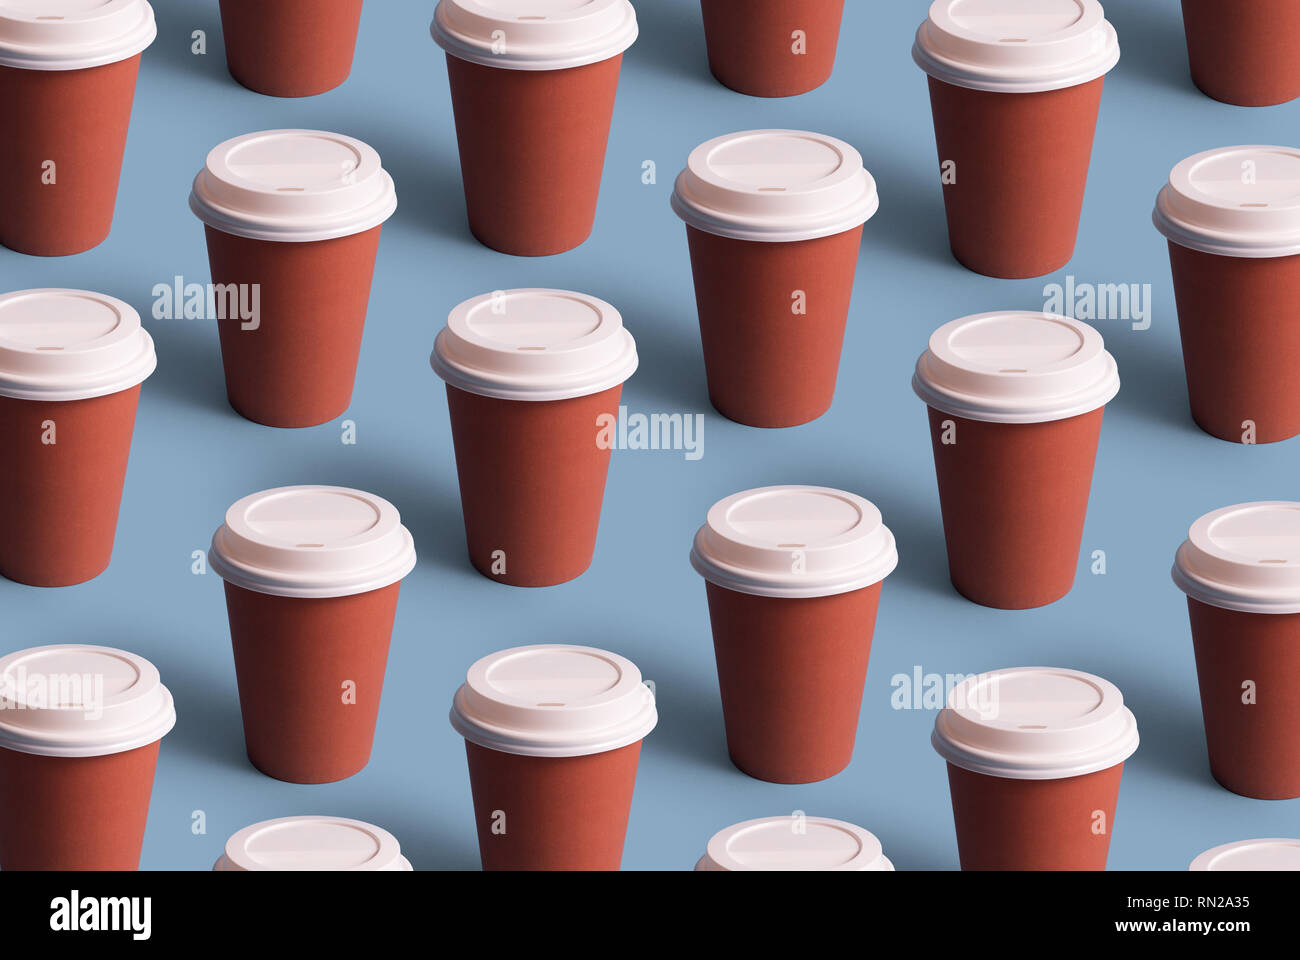 Tazas de café desechables organizadas en una fila sobre fondo azul. Foto de stock